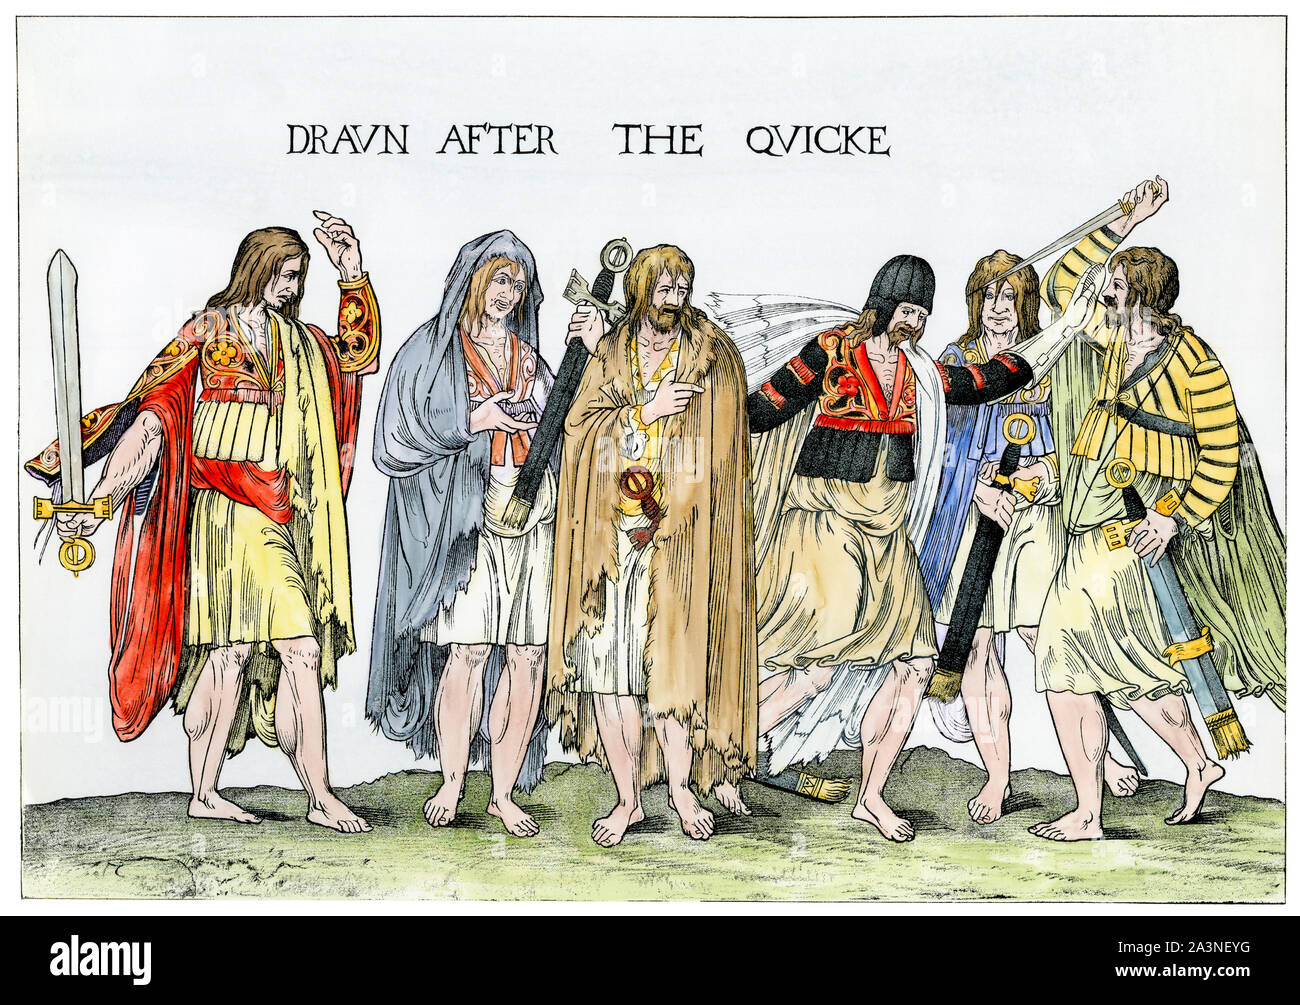 The Chieftains irlandais 'drawn après le quicke" (de la vie), années 1500. À la main, gravure sur bois Banque D'Images